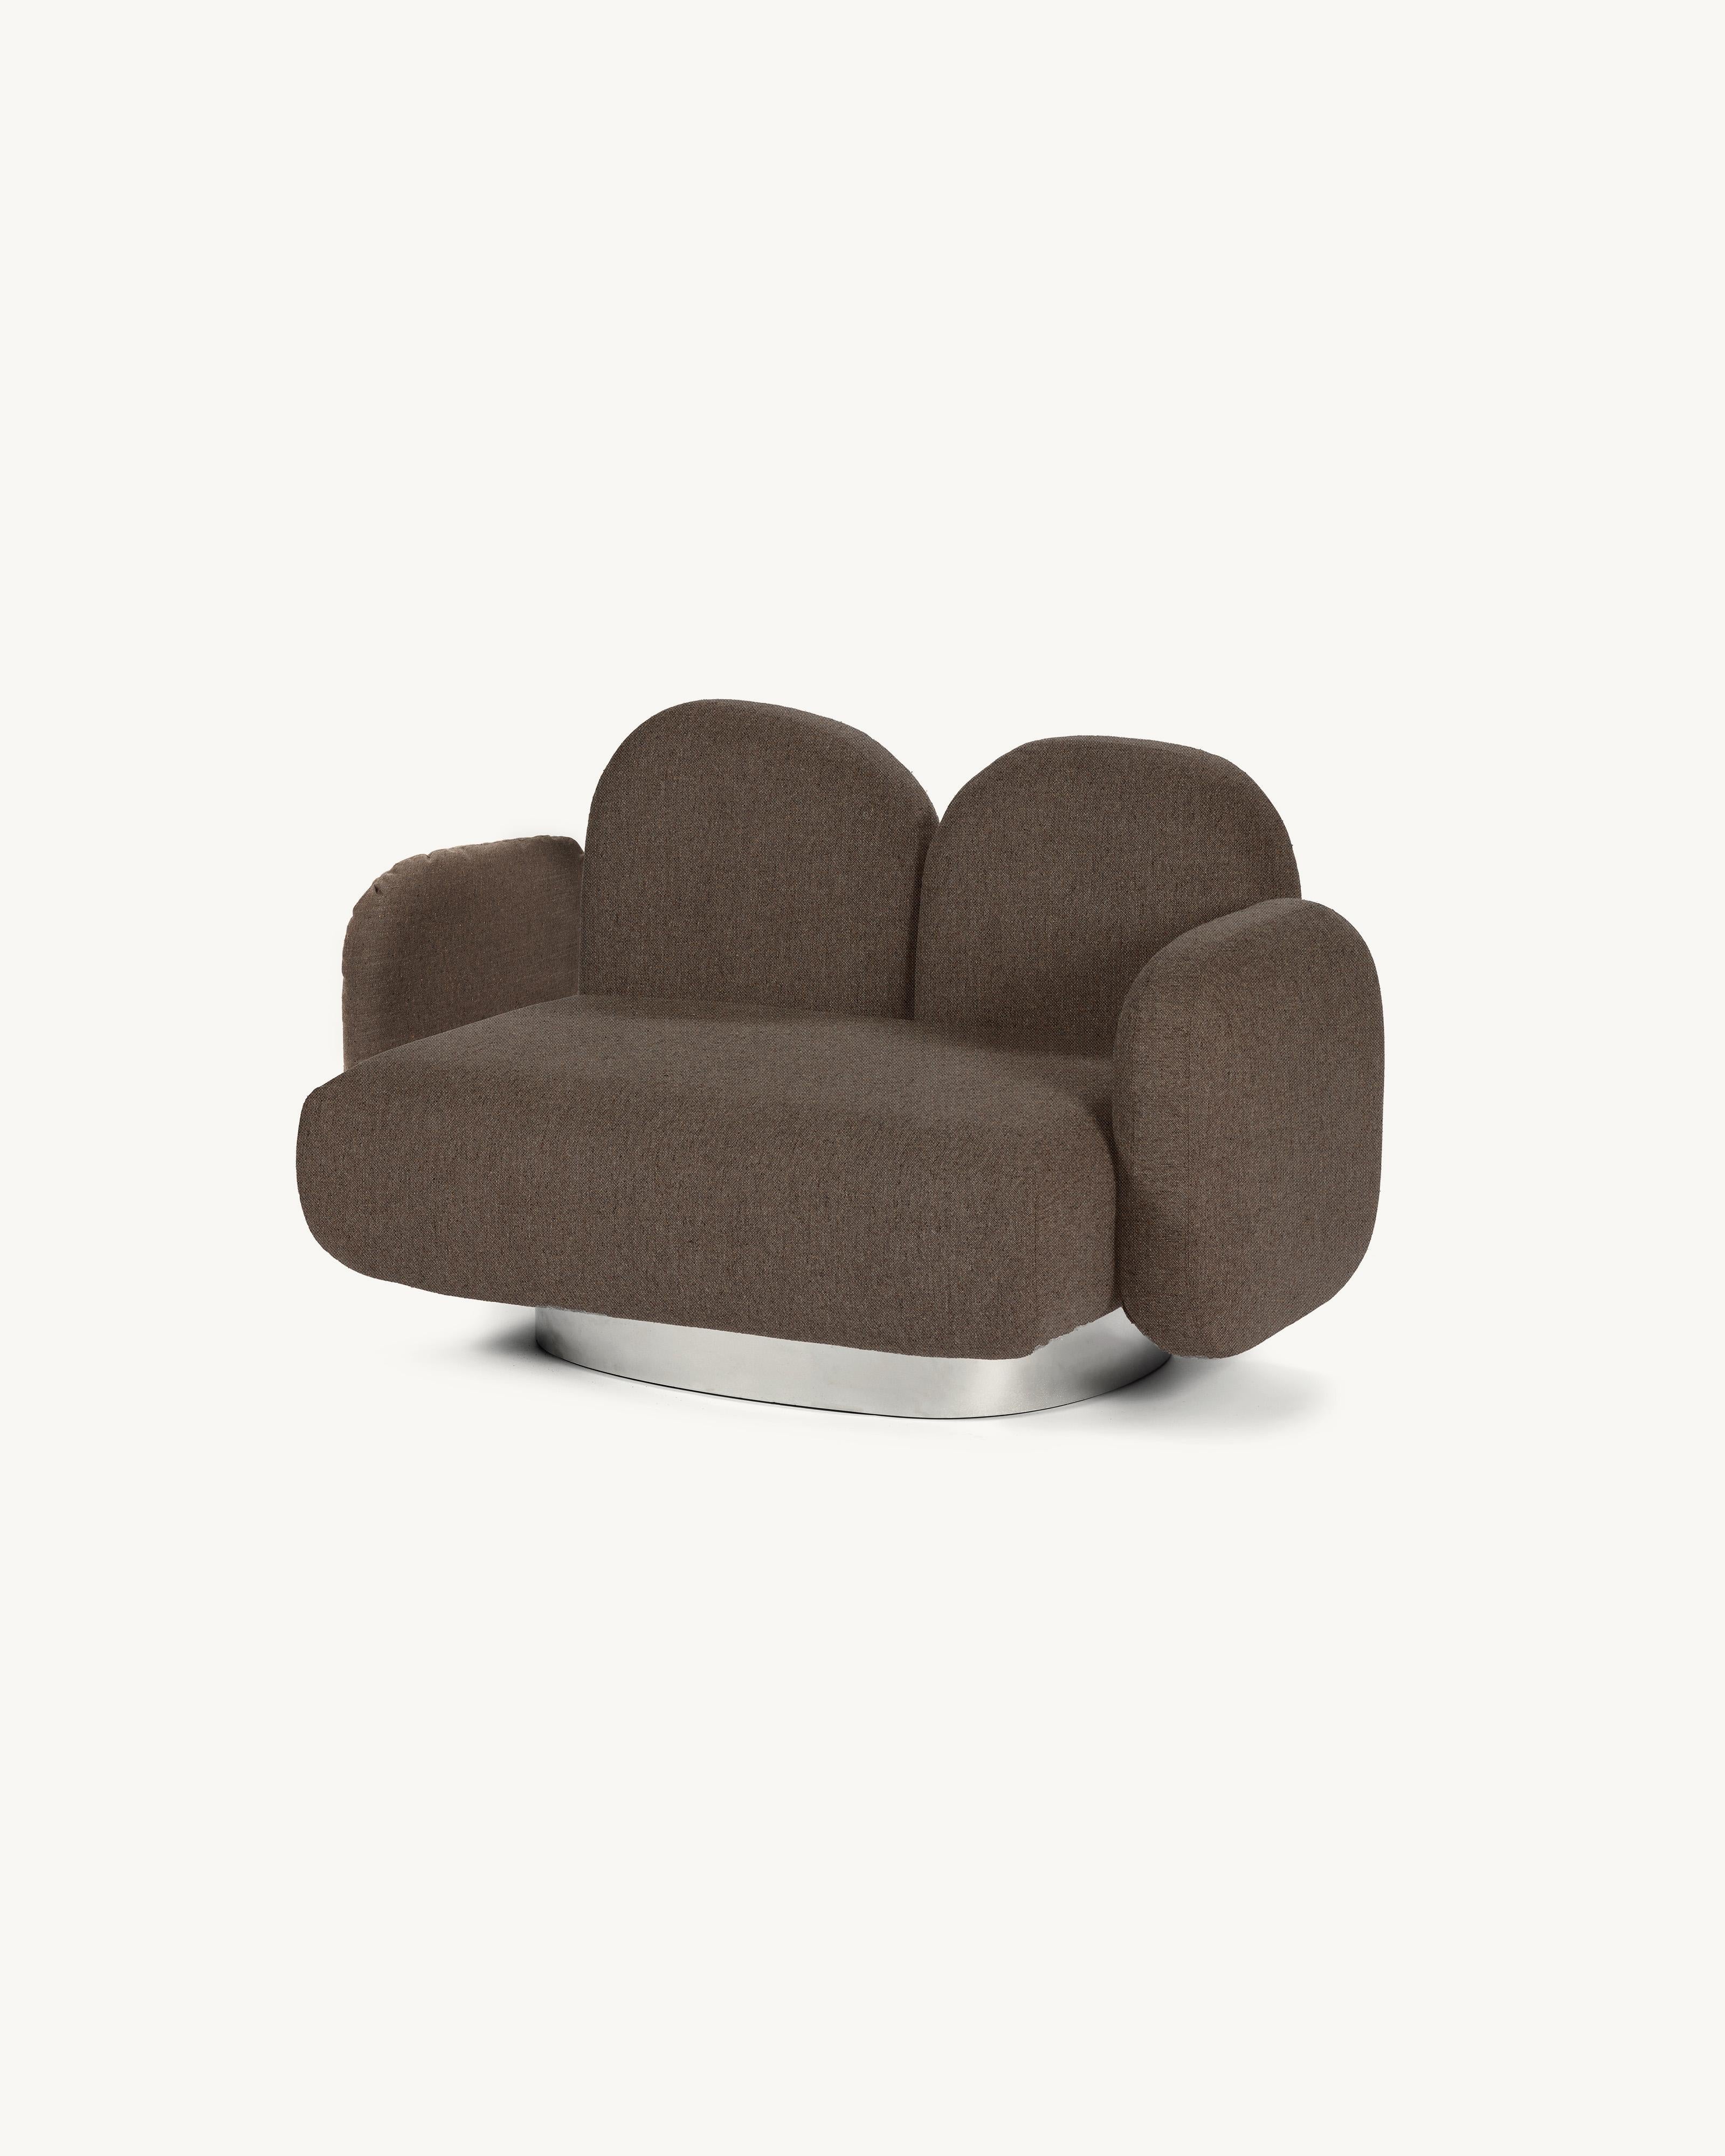 Modular Sofa Assemble 1-Sitz-Sofa mit 2 Armlehnen 
Entworfen von Destroyers/Builders x Valery Objects
Polsterung: Senales grau

Code: V9020321

Abmessungen: L 87 B 143 H 85CM (SH 40 cm)
MATERIALIEN: Holz, Aluminium und Polstermöbel

Das